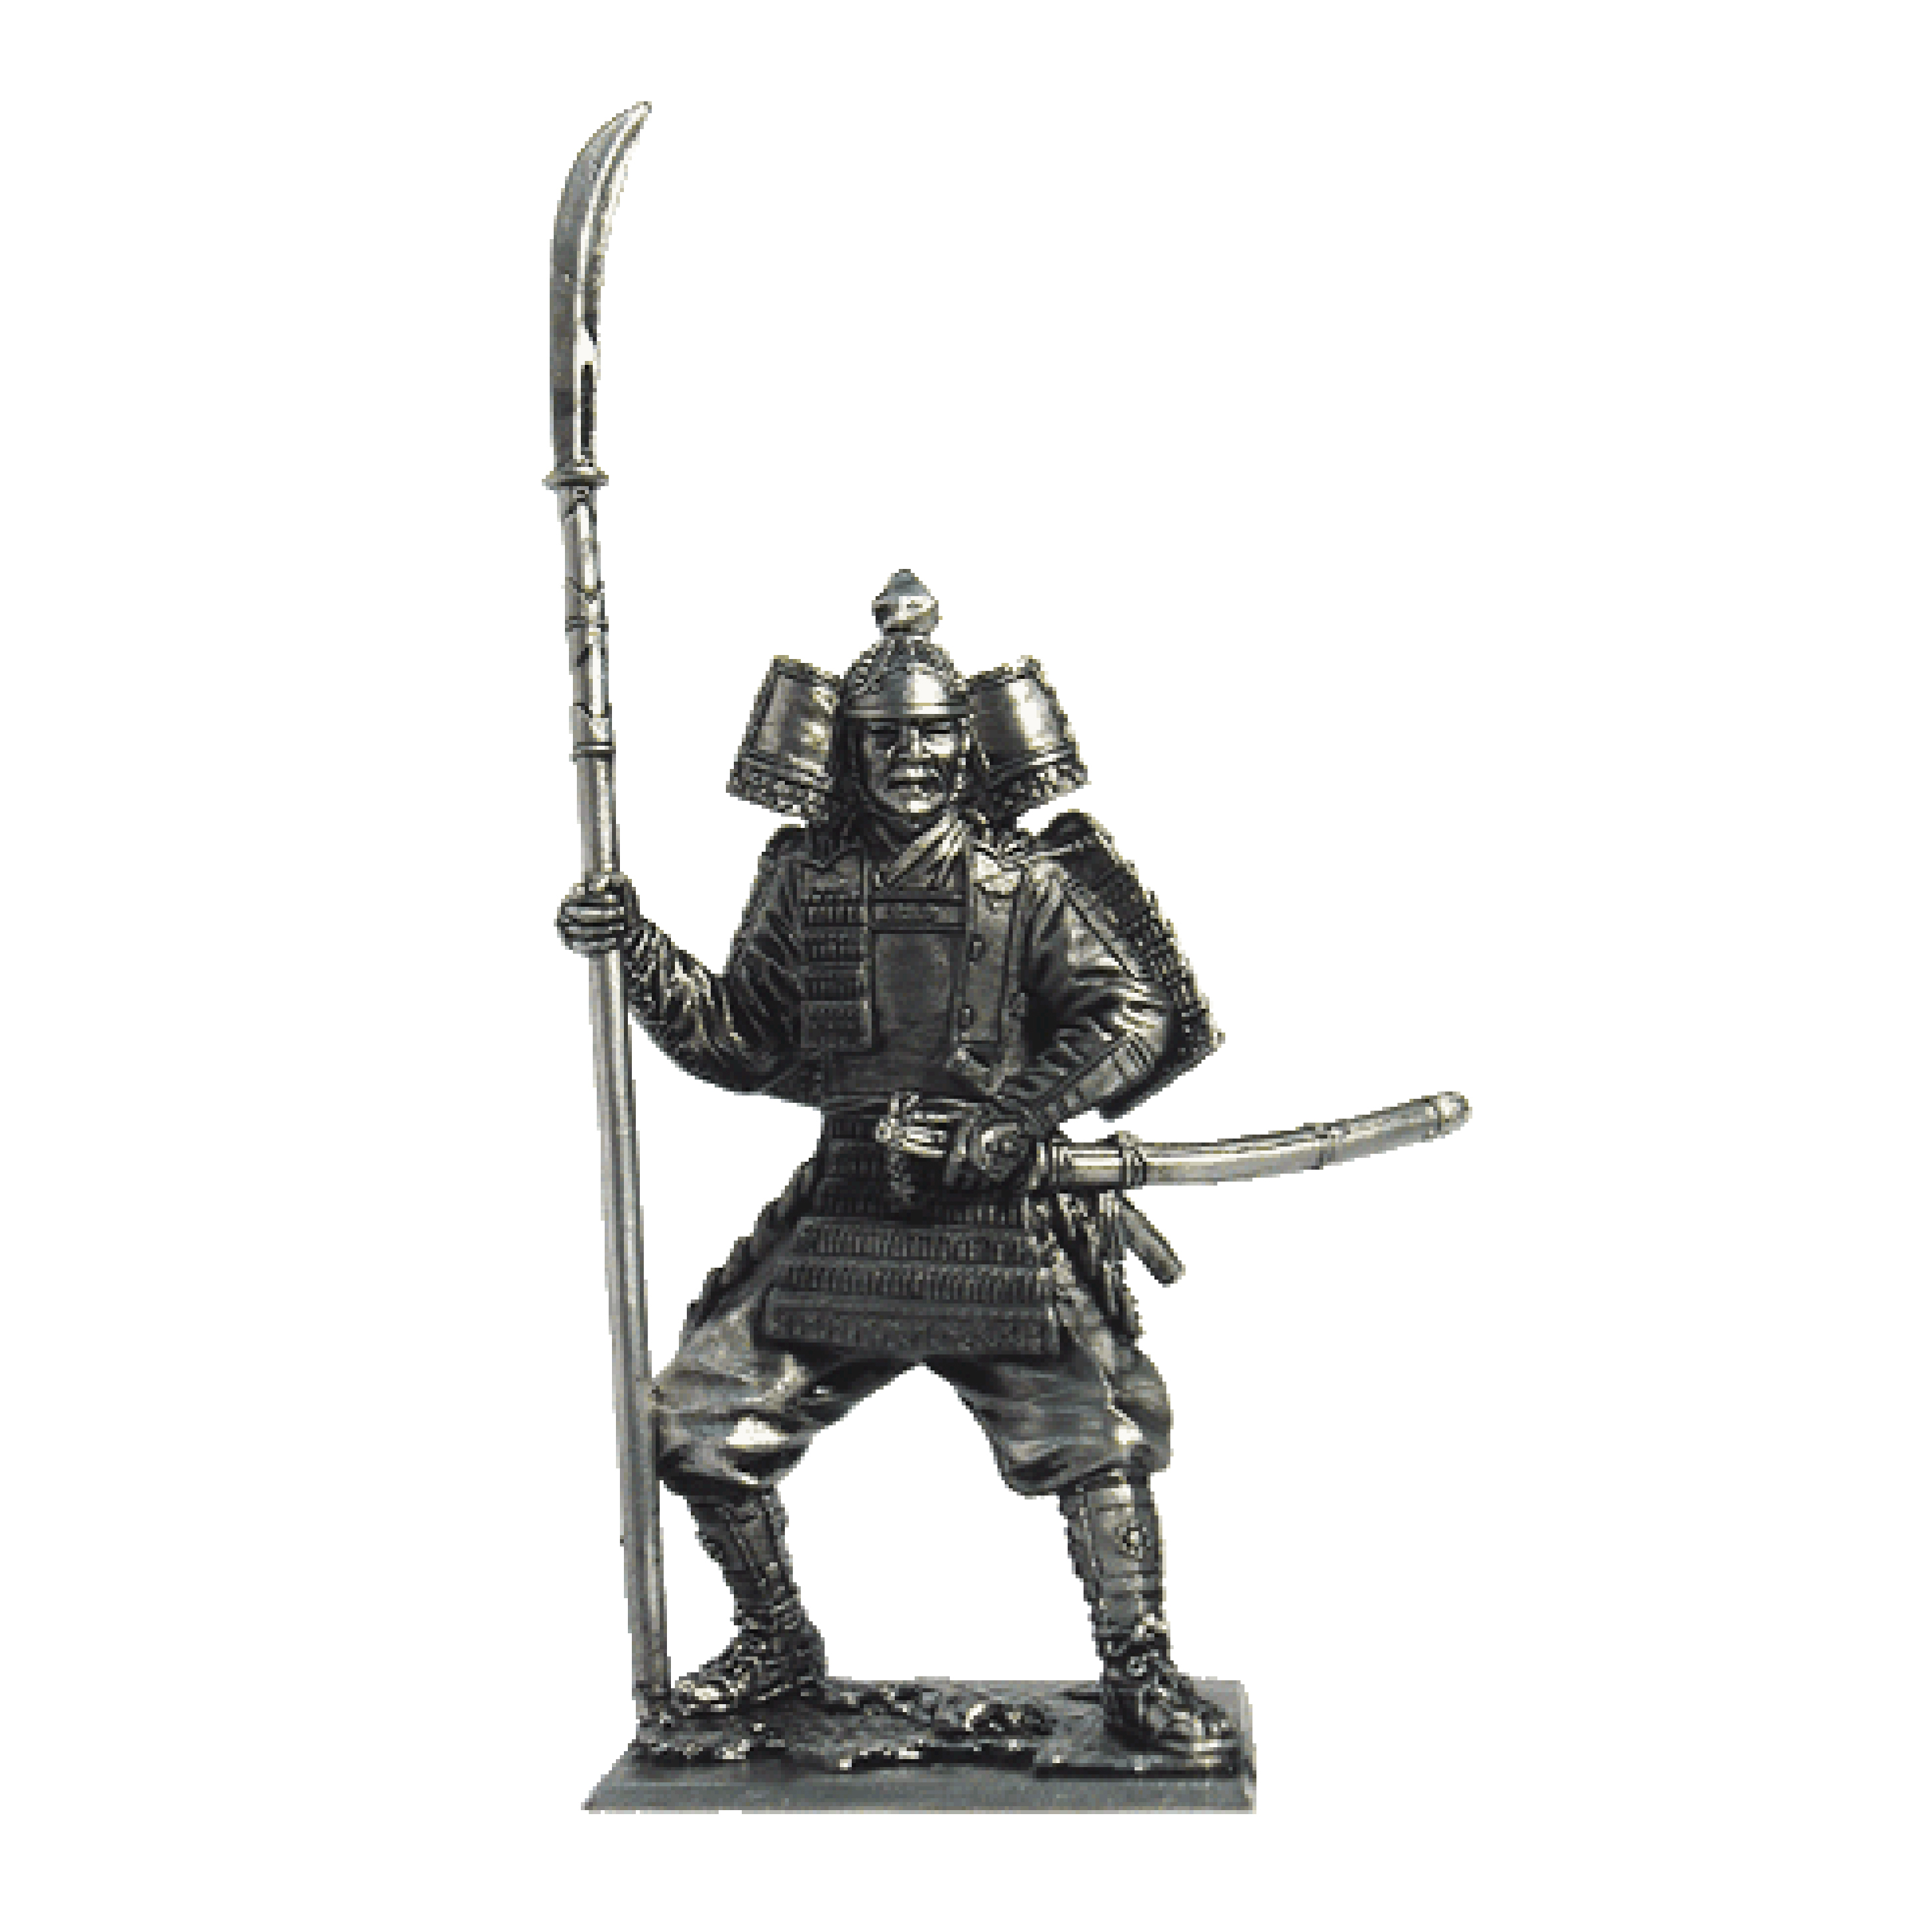 Samurai, 11-13 century